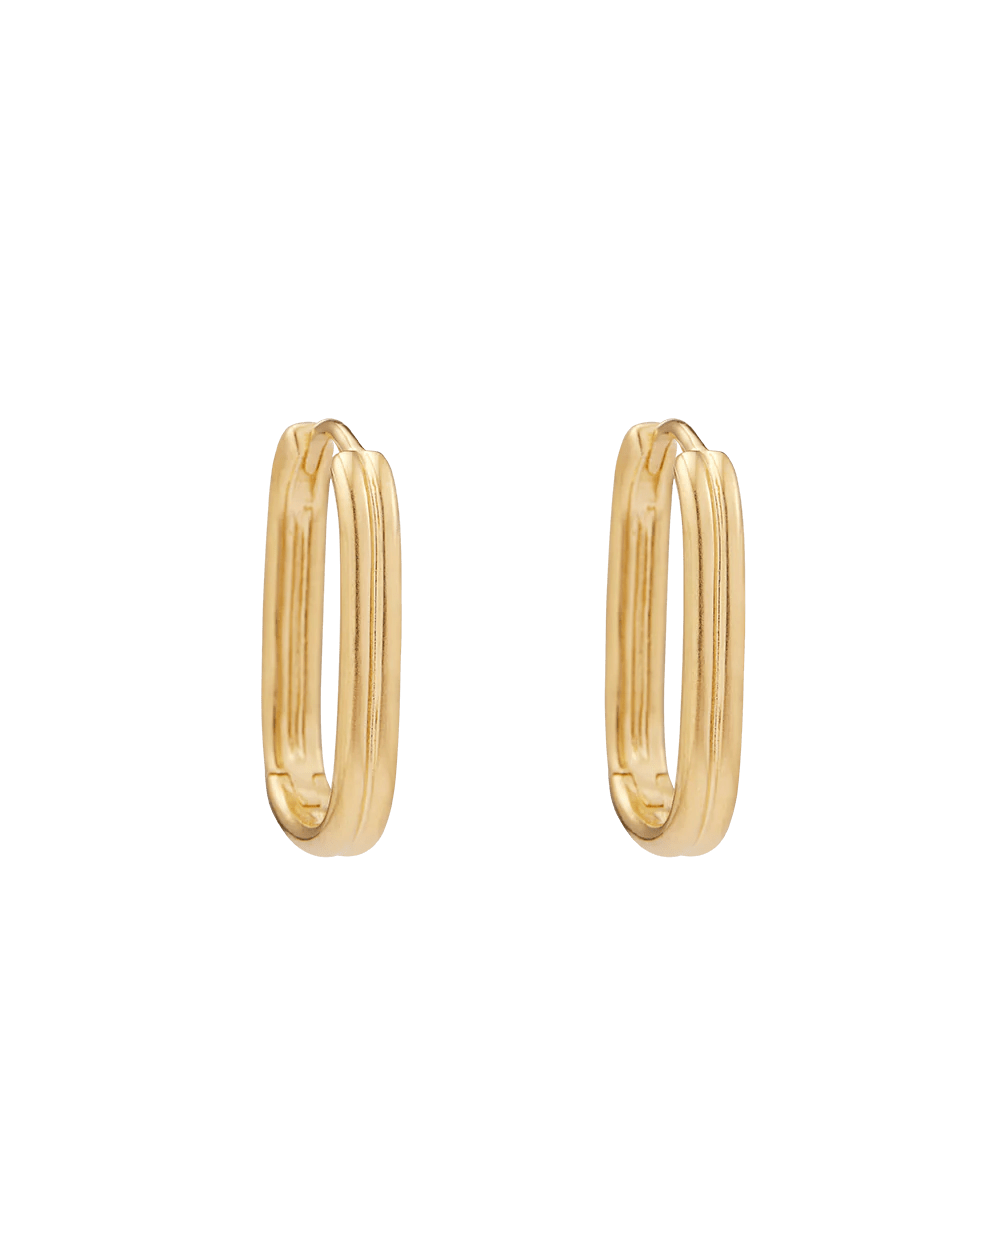 Kirstin Ash Earrings Yellow Gold / Medium Roam Hoops Earrings